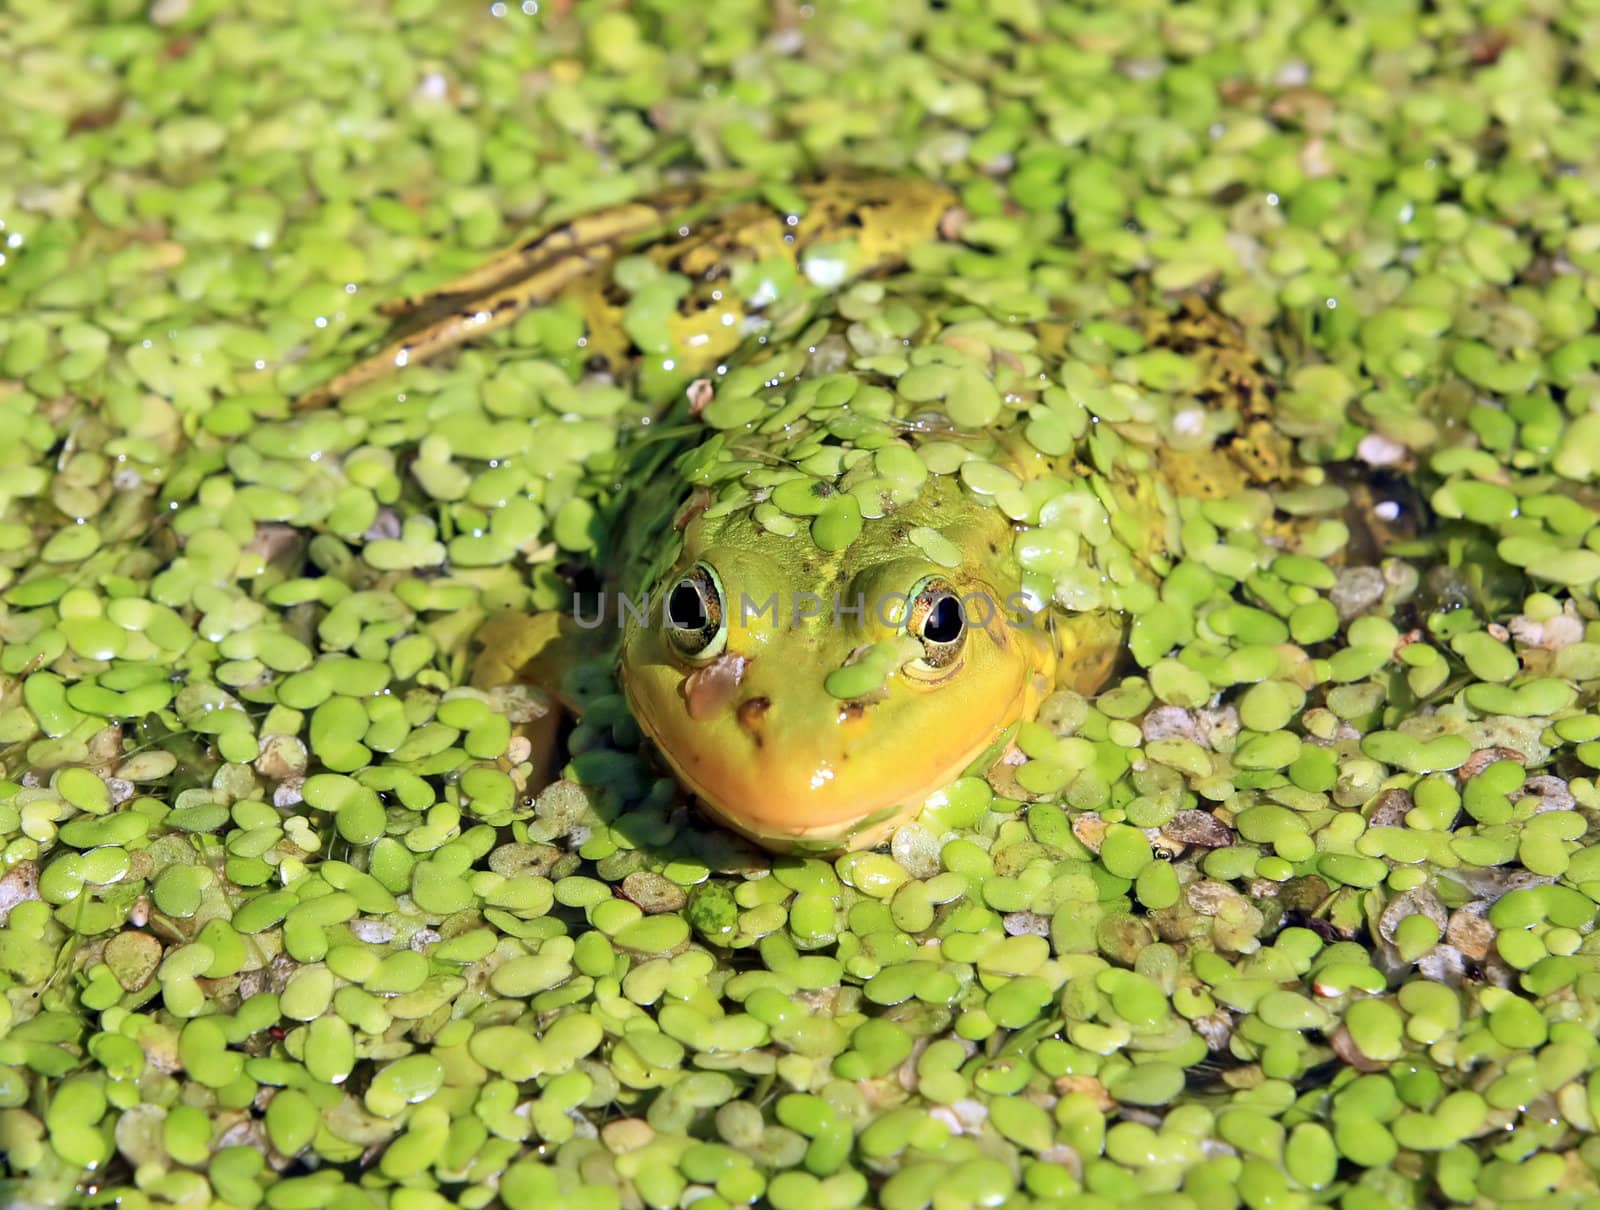 frog in marsh amongst duckweed by basel101658